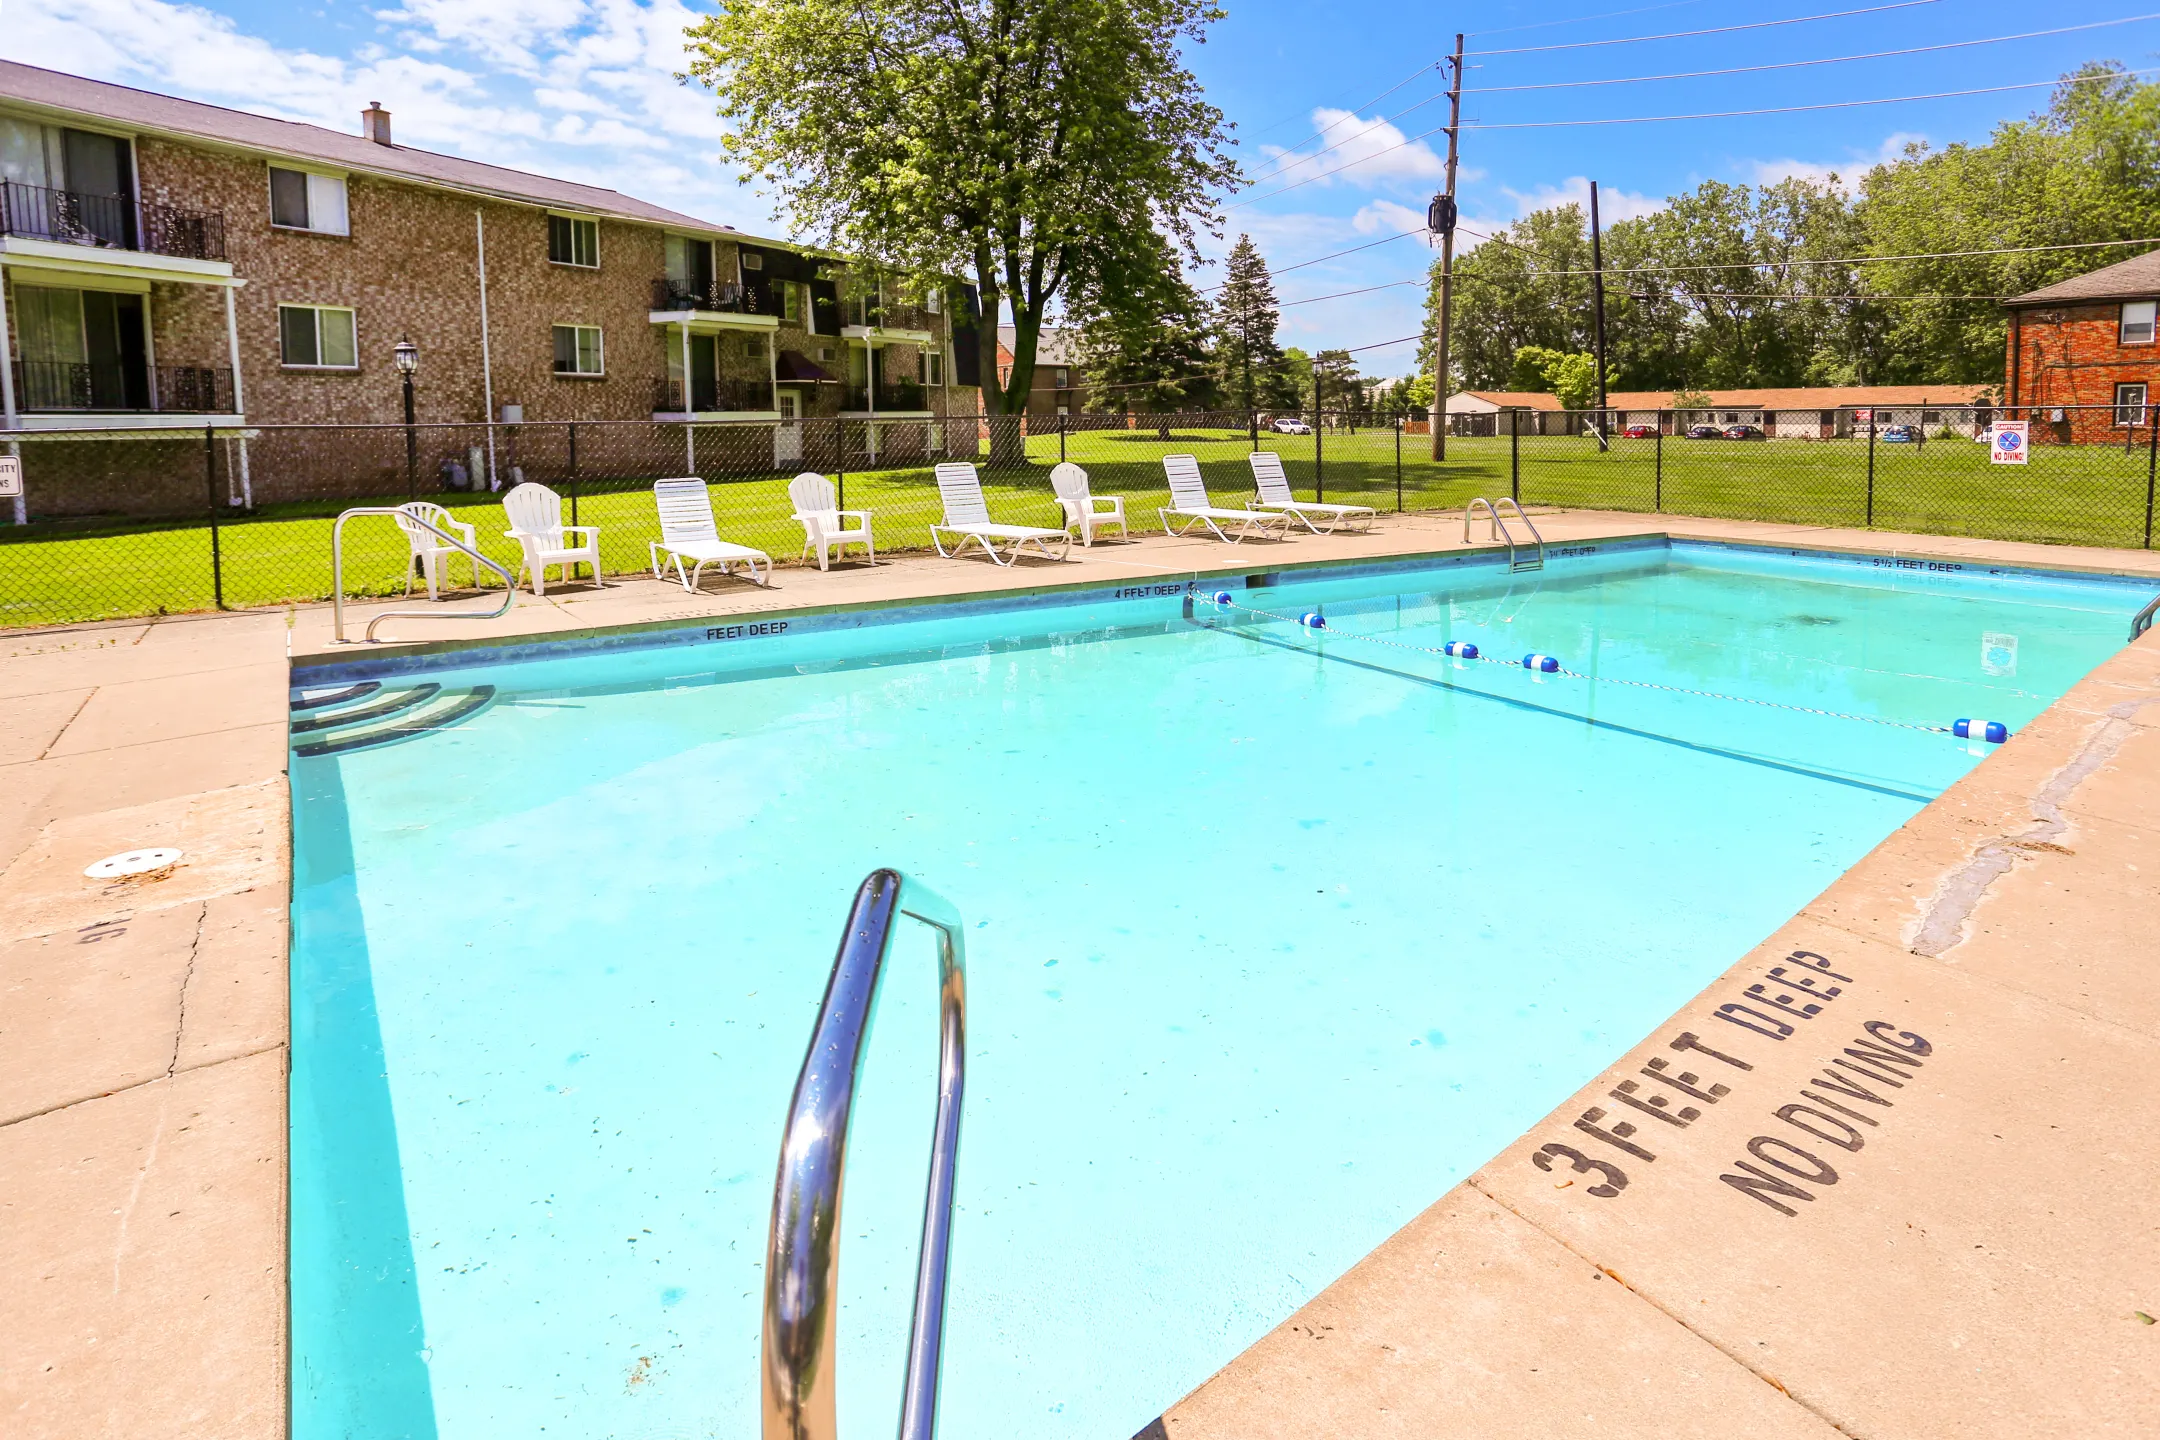 Pool - Losson Garden Apartments - Buffalo, NY